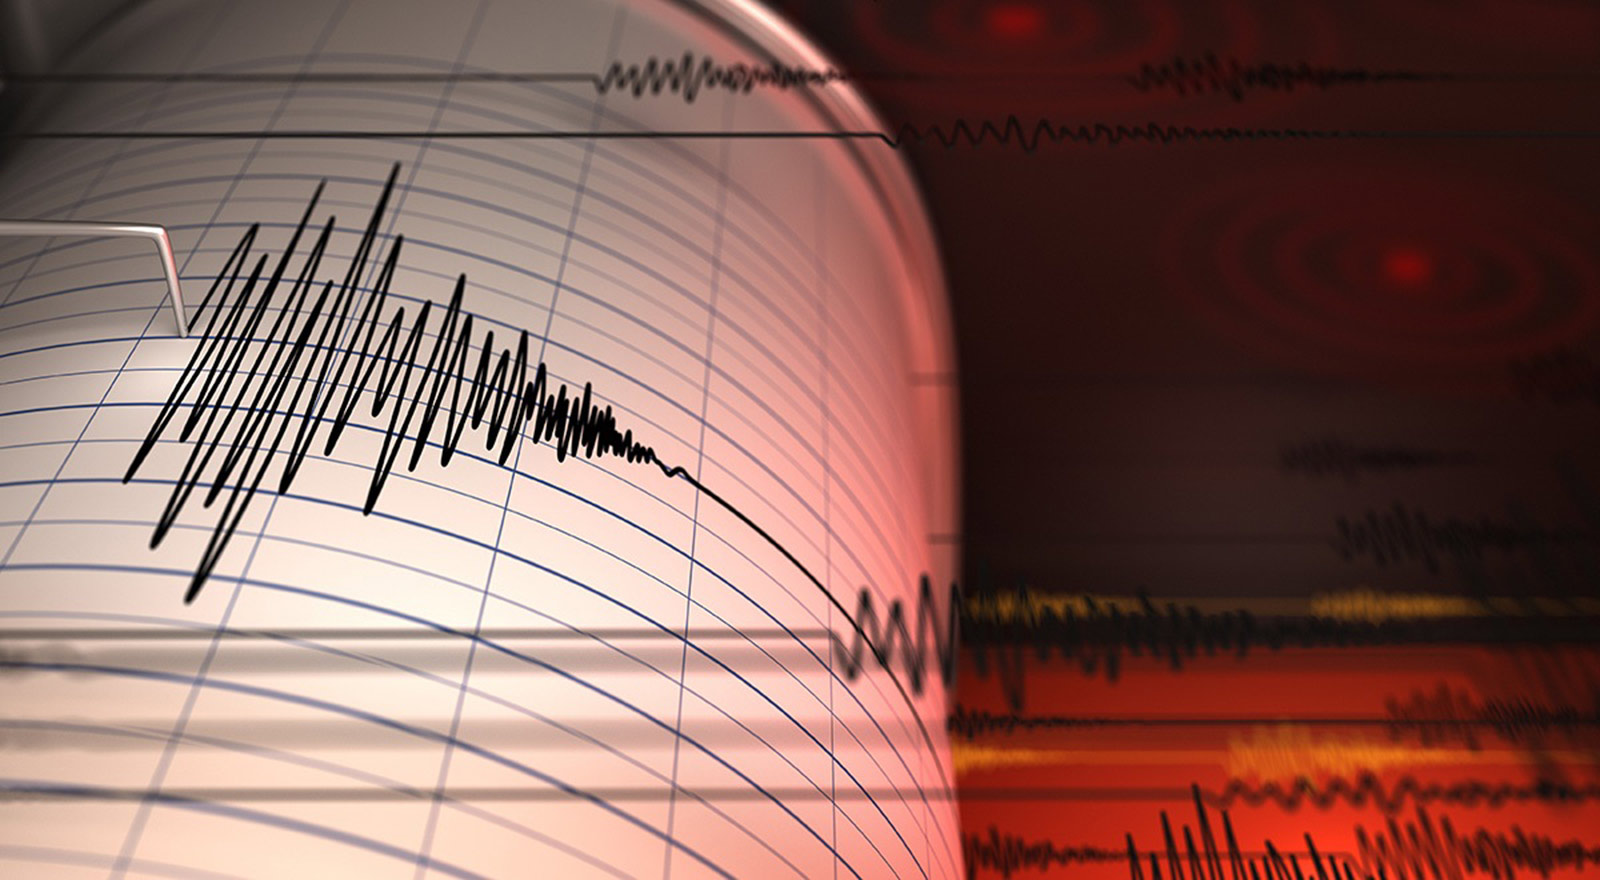 زلزال بقوة 5.2 درجات يضرب الفلبين وتحذير من هزات ارتدادية